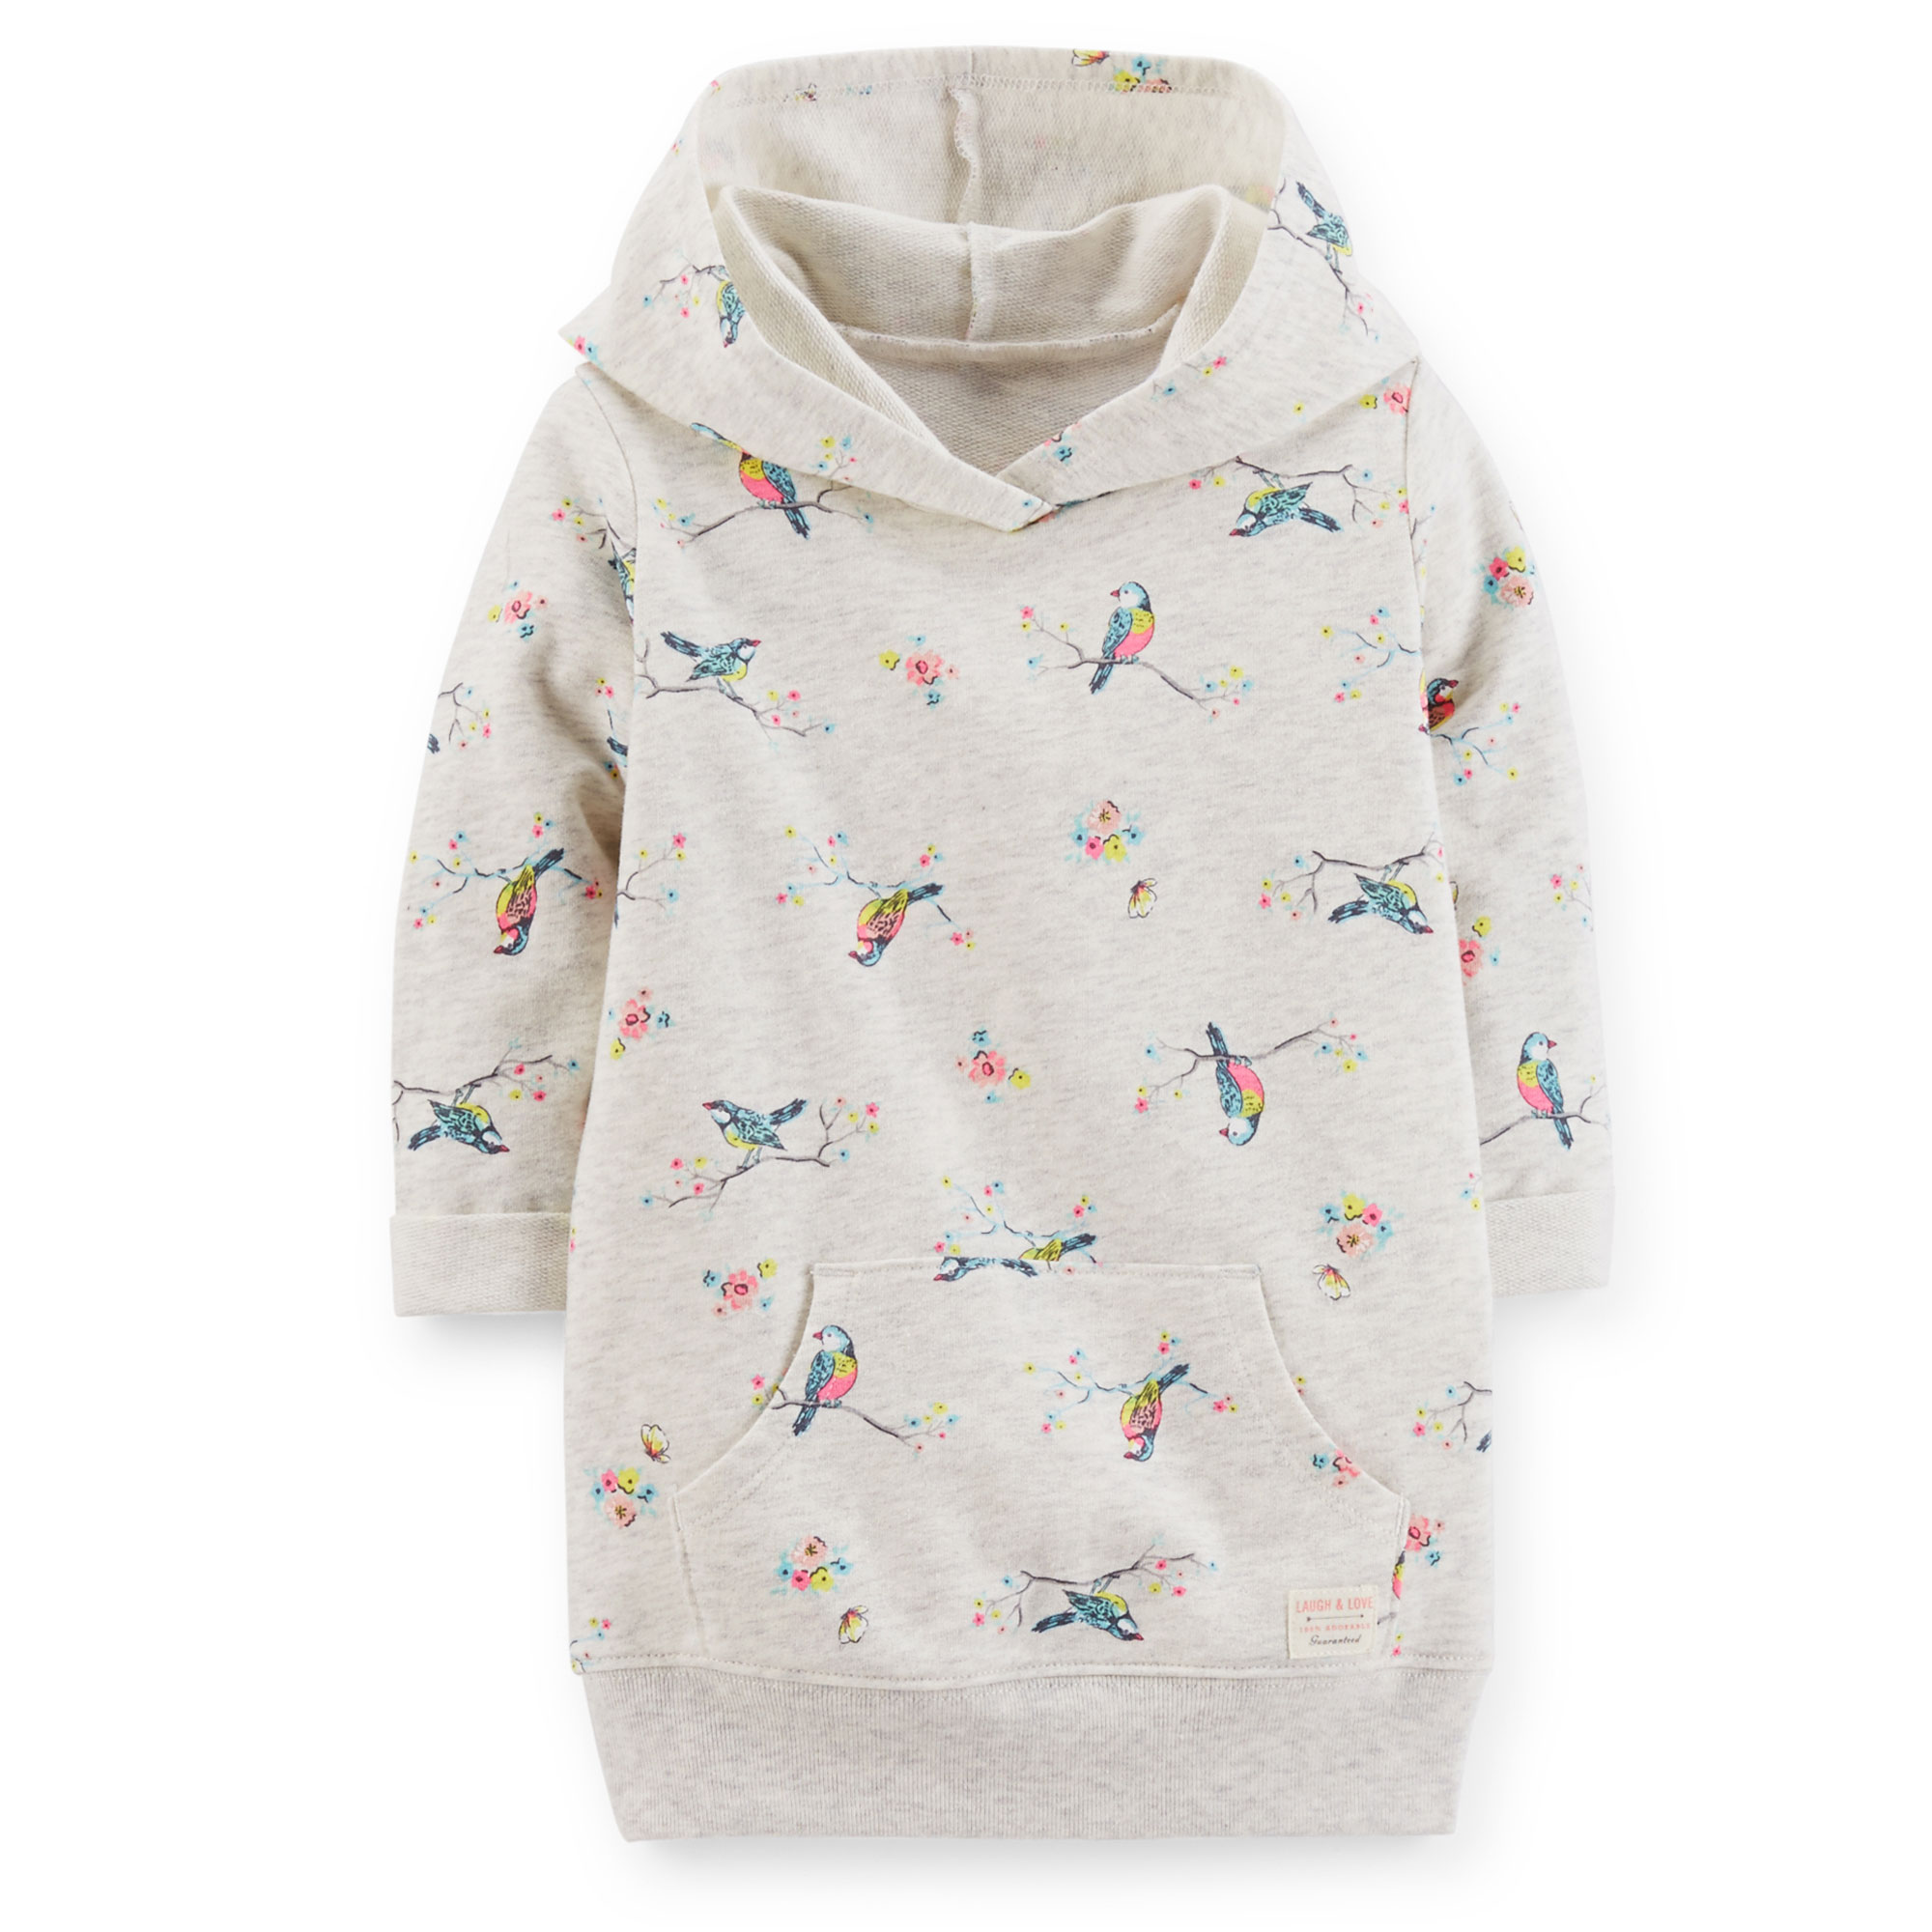 Carter's Girl's Hooded Sweatshirt - Birds & Floral